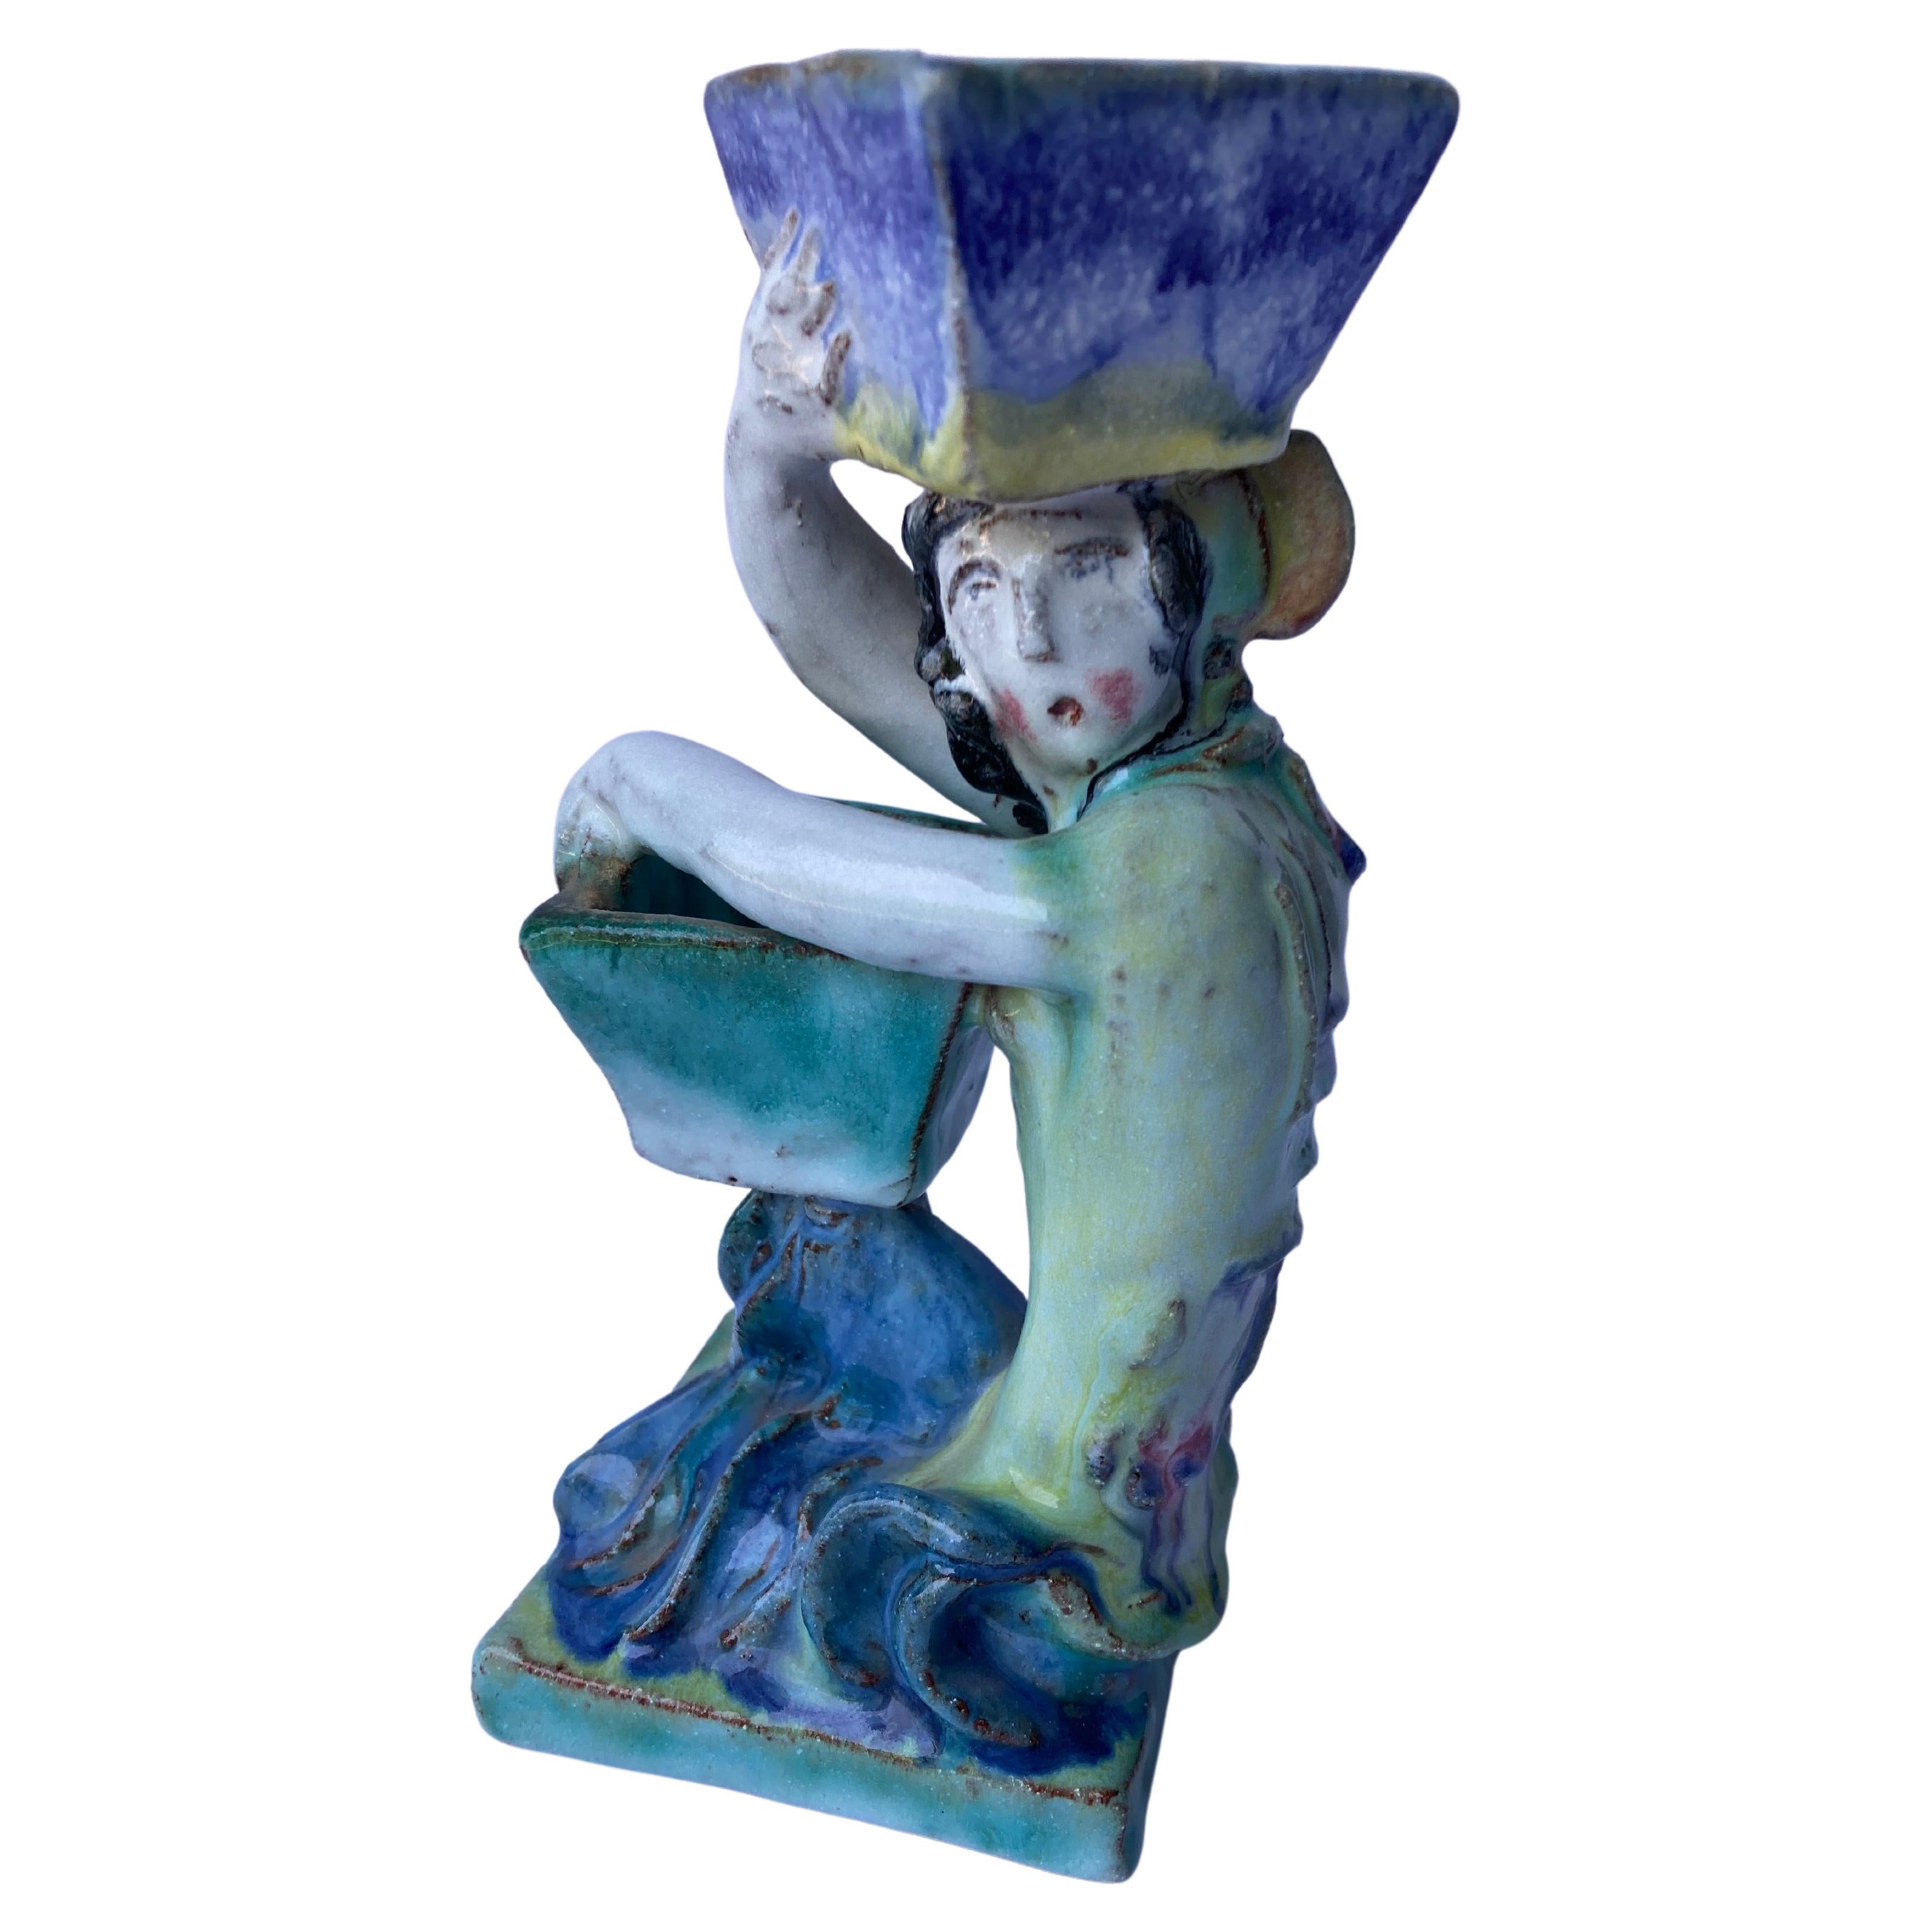 Keramik-Skulptur/Terracotta, Bild für die Wiener Werkstatte, "Salzfass" von Erna Kopriva